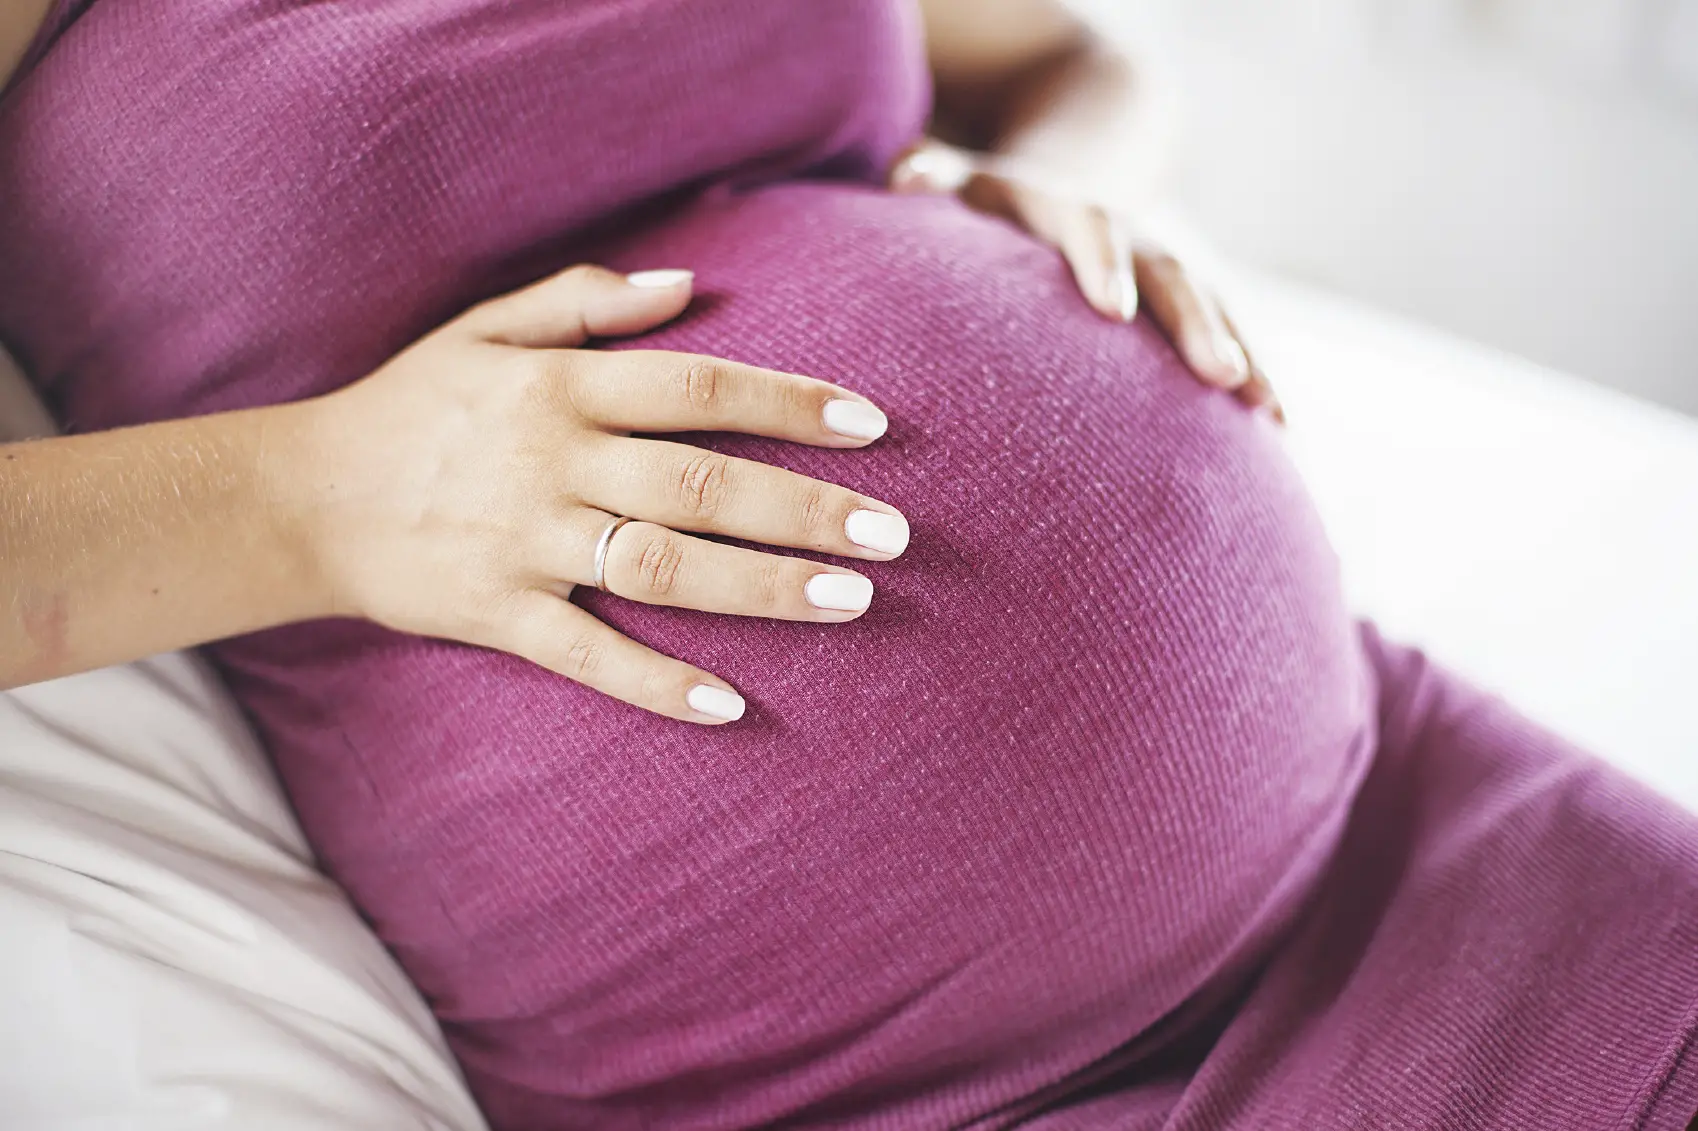 Datos curiosos del embarazo vientre